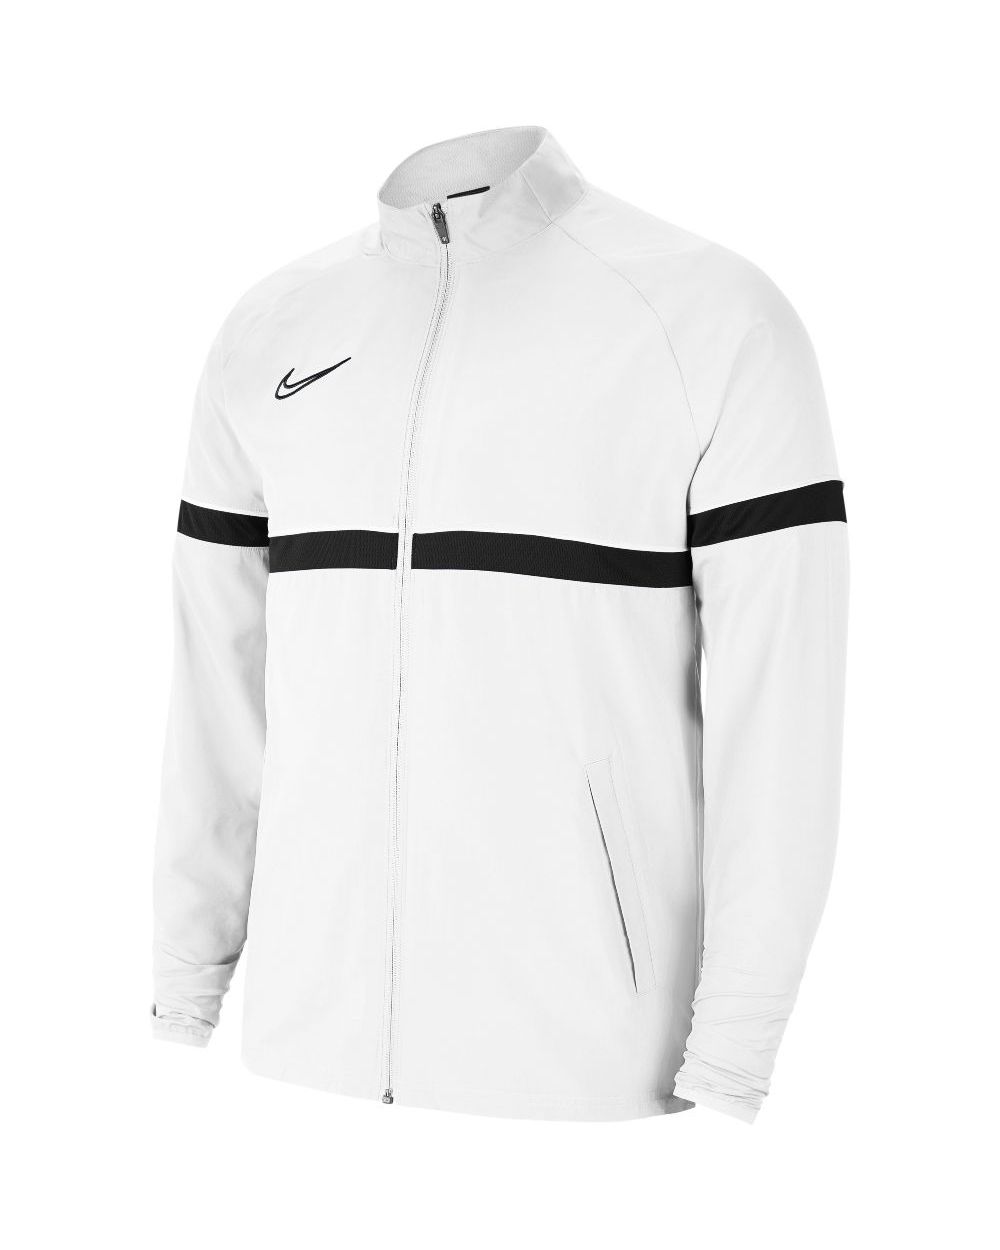 Nike Dri-FIT 21 Blanc/Noir |